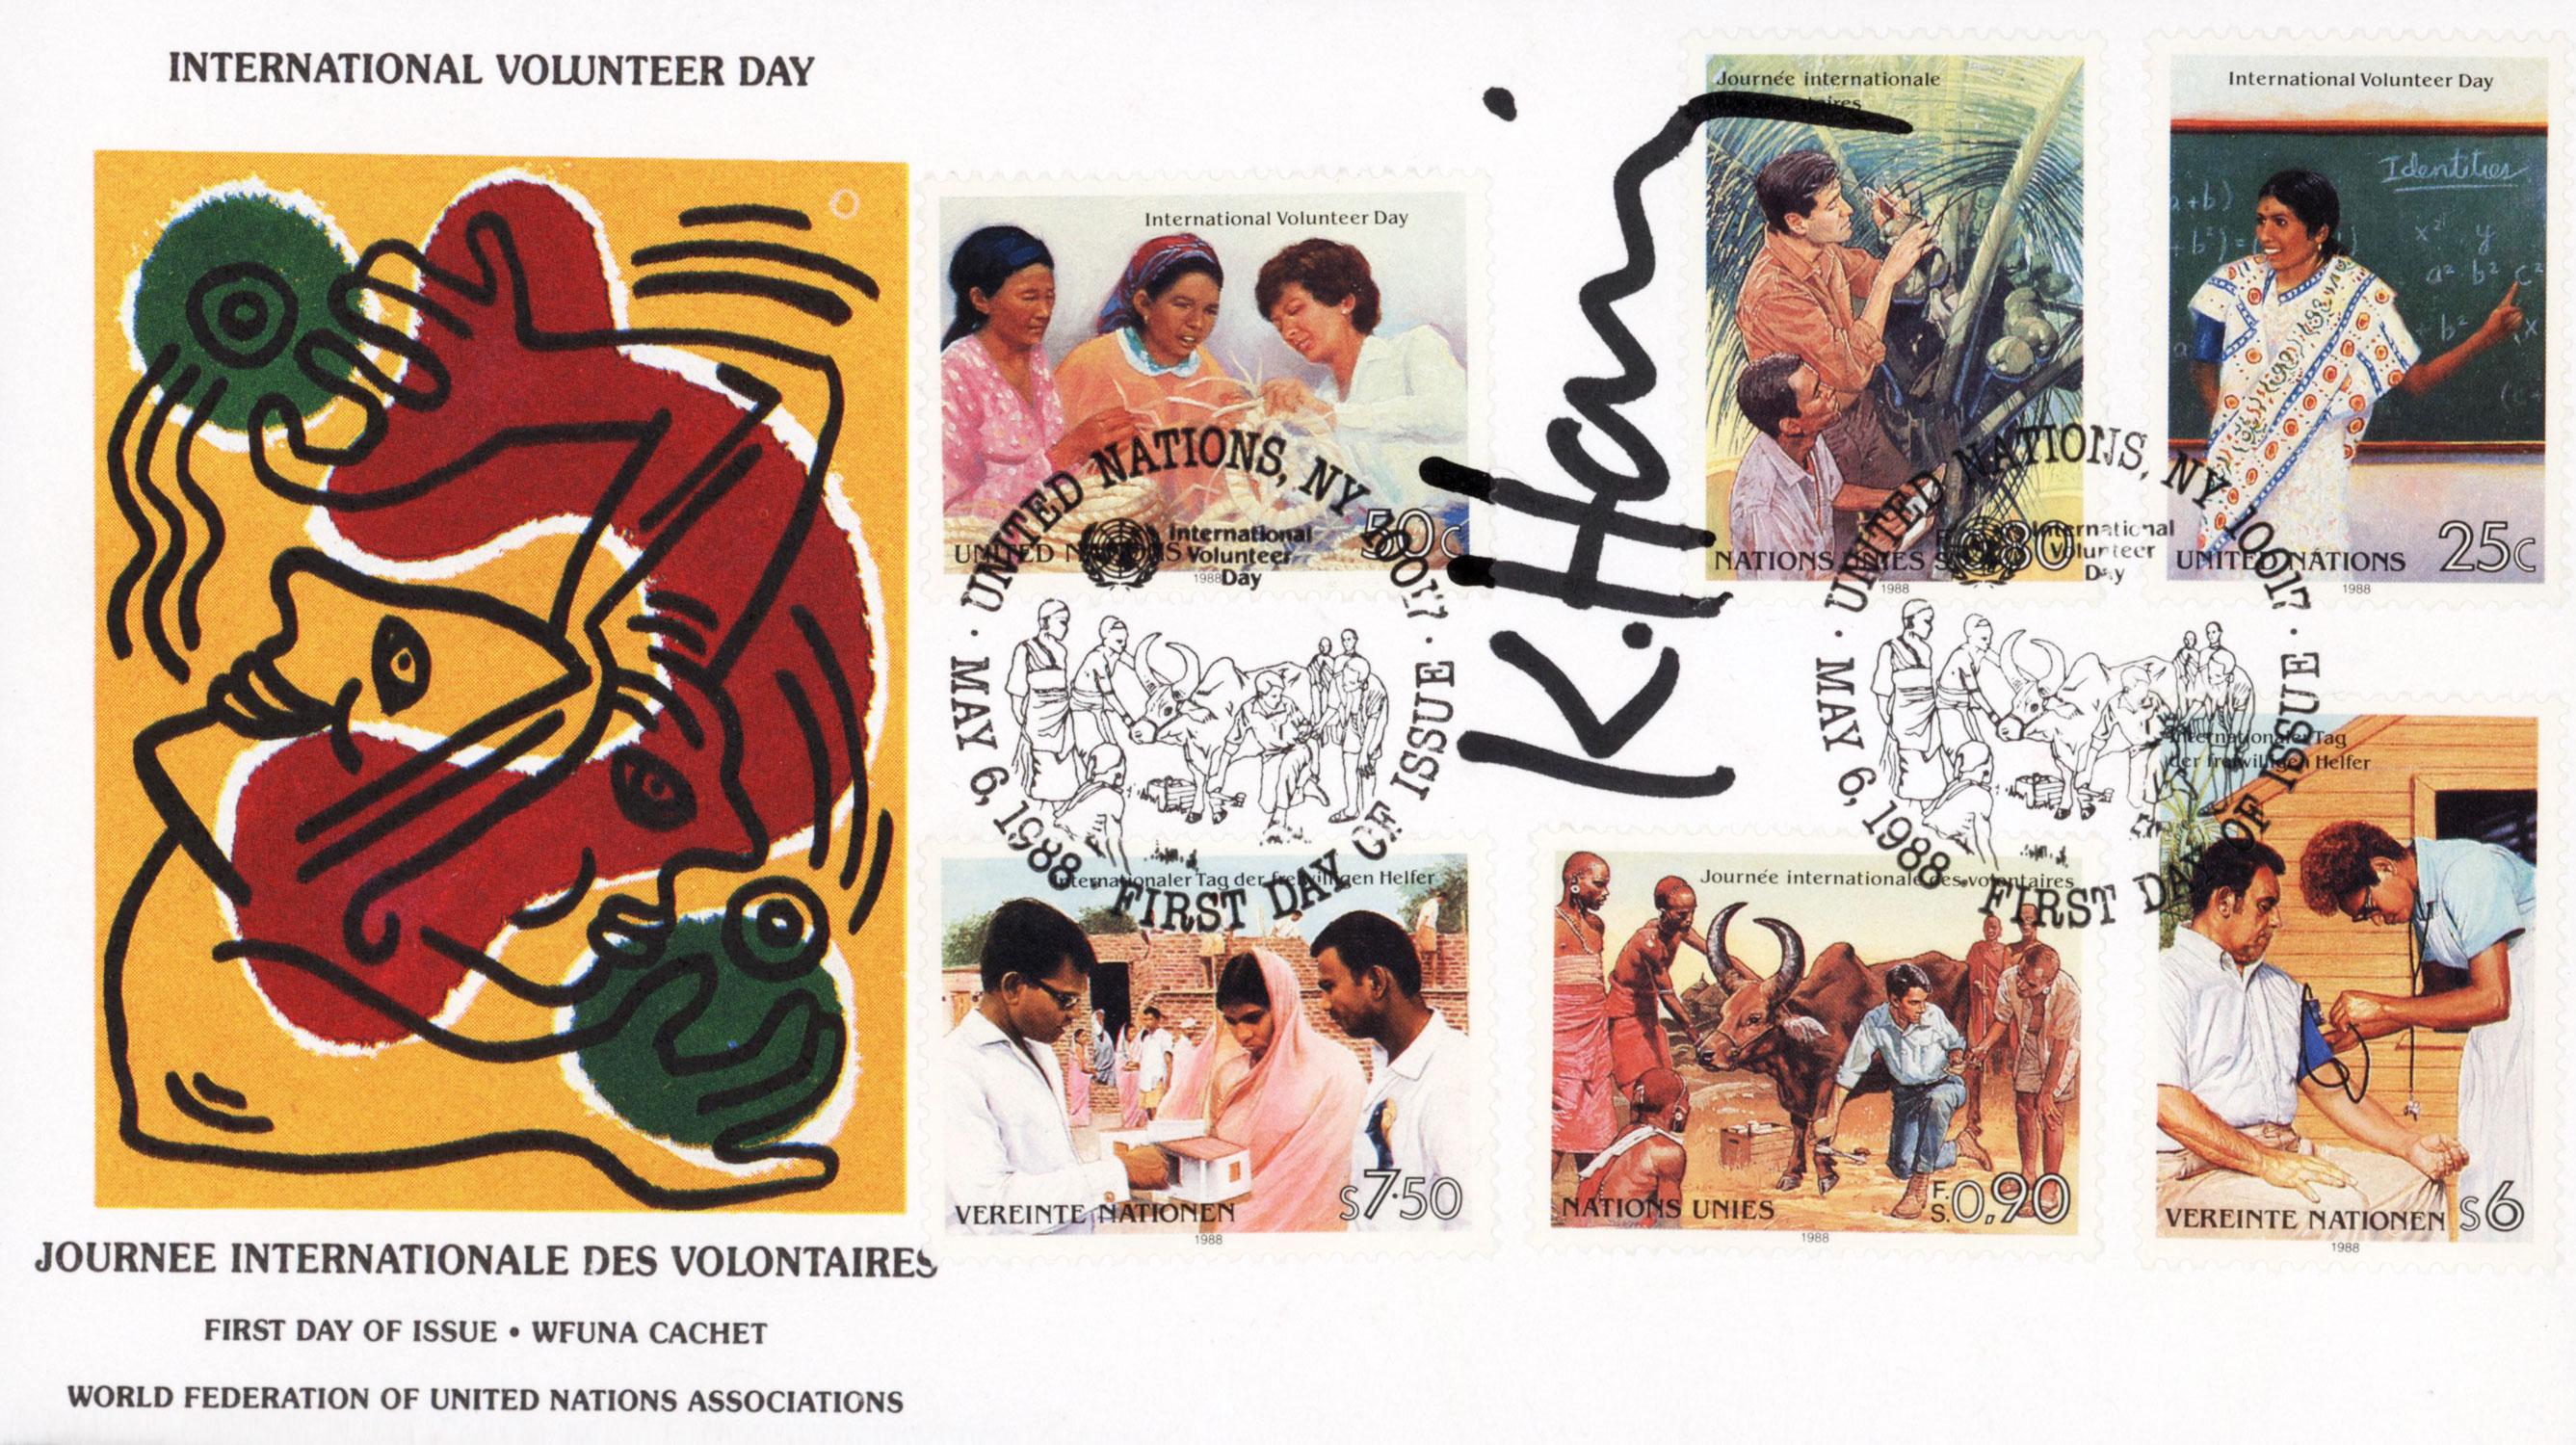 Keith Haring Journée internationale des volontaires 1988 :
Un exemple rare présentant une signature au marqueur noir bien préservée et audacieuse de Keith Haring. La "Journée internationale des volontaires" est une cause de droits de l'homme créée